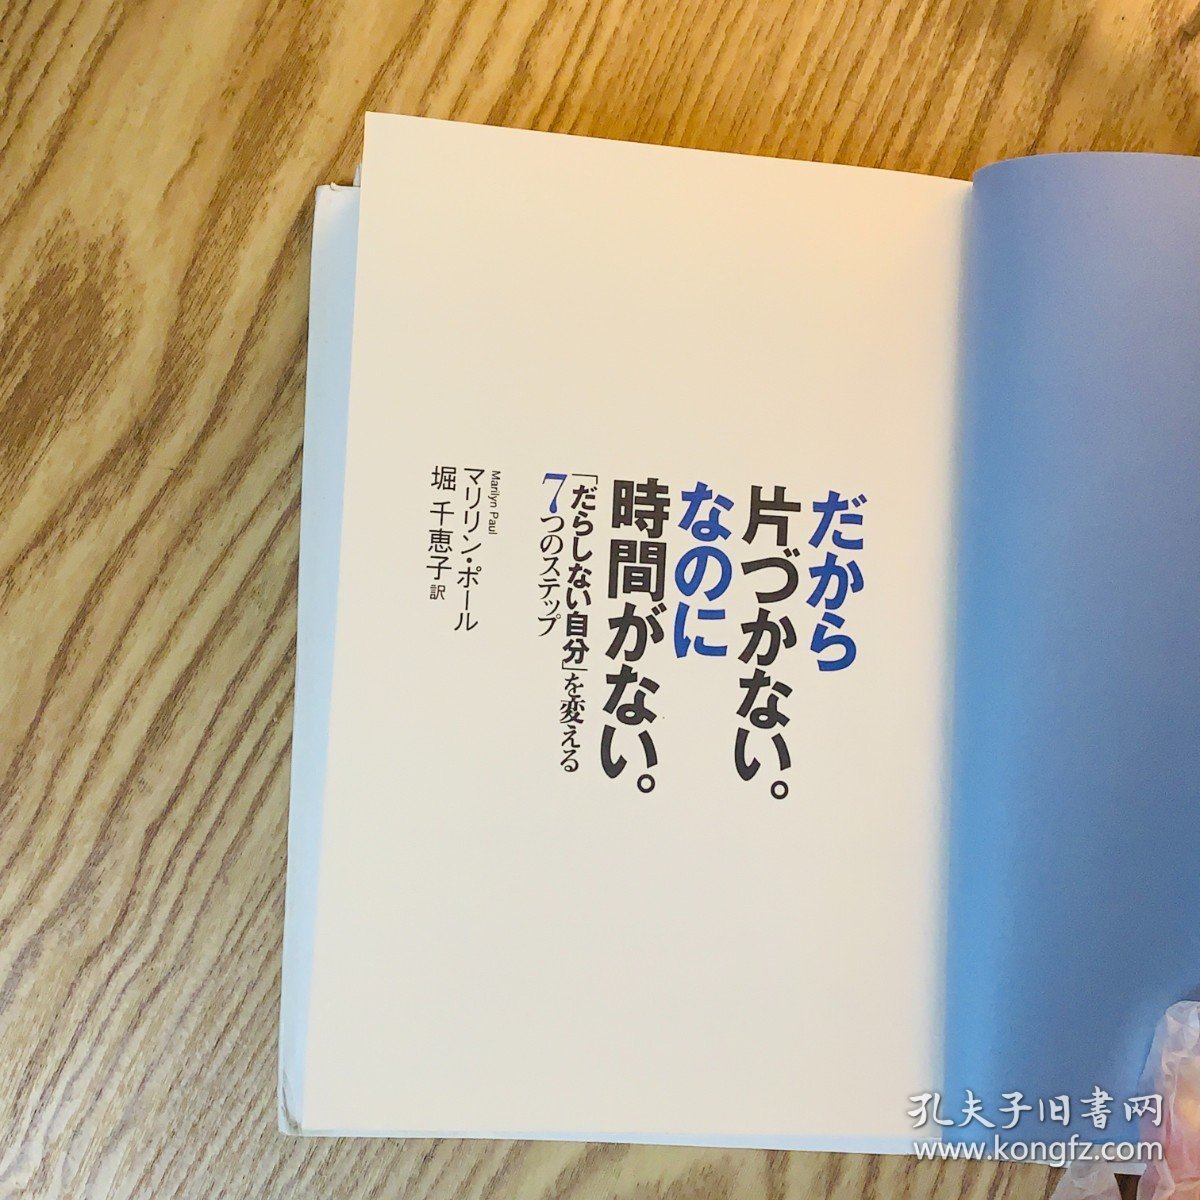 日本日文原版书 所以不收拾才会没时间/だから片づかない。なのに時間がない。